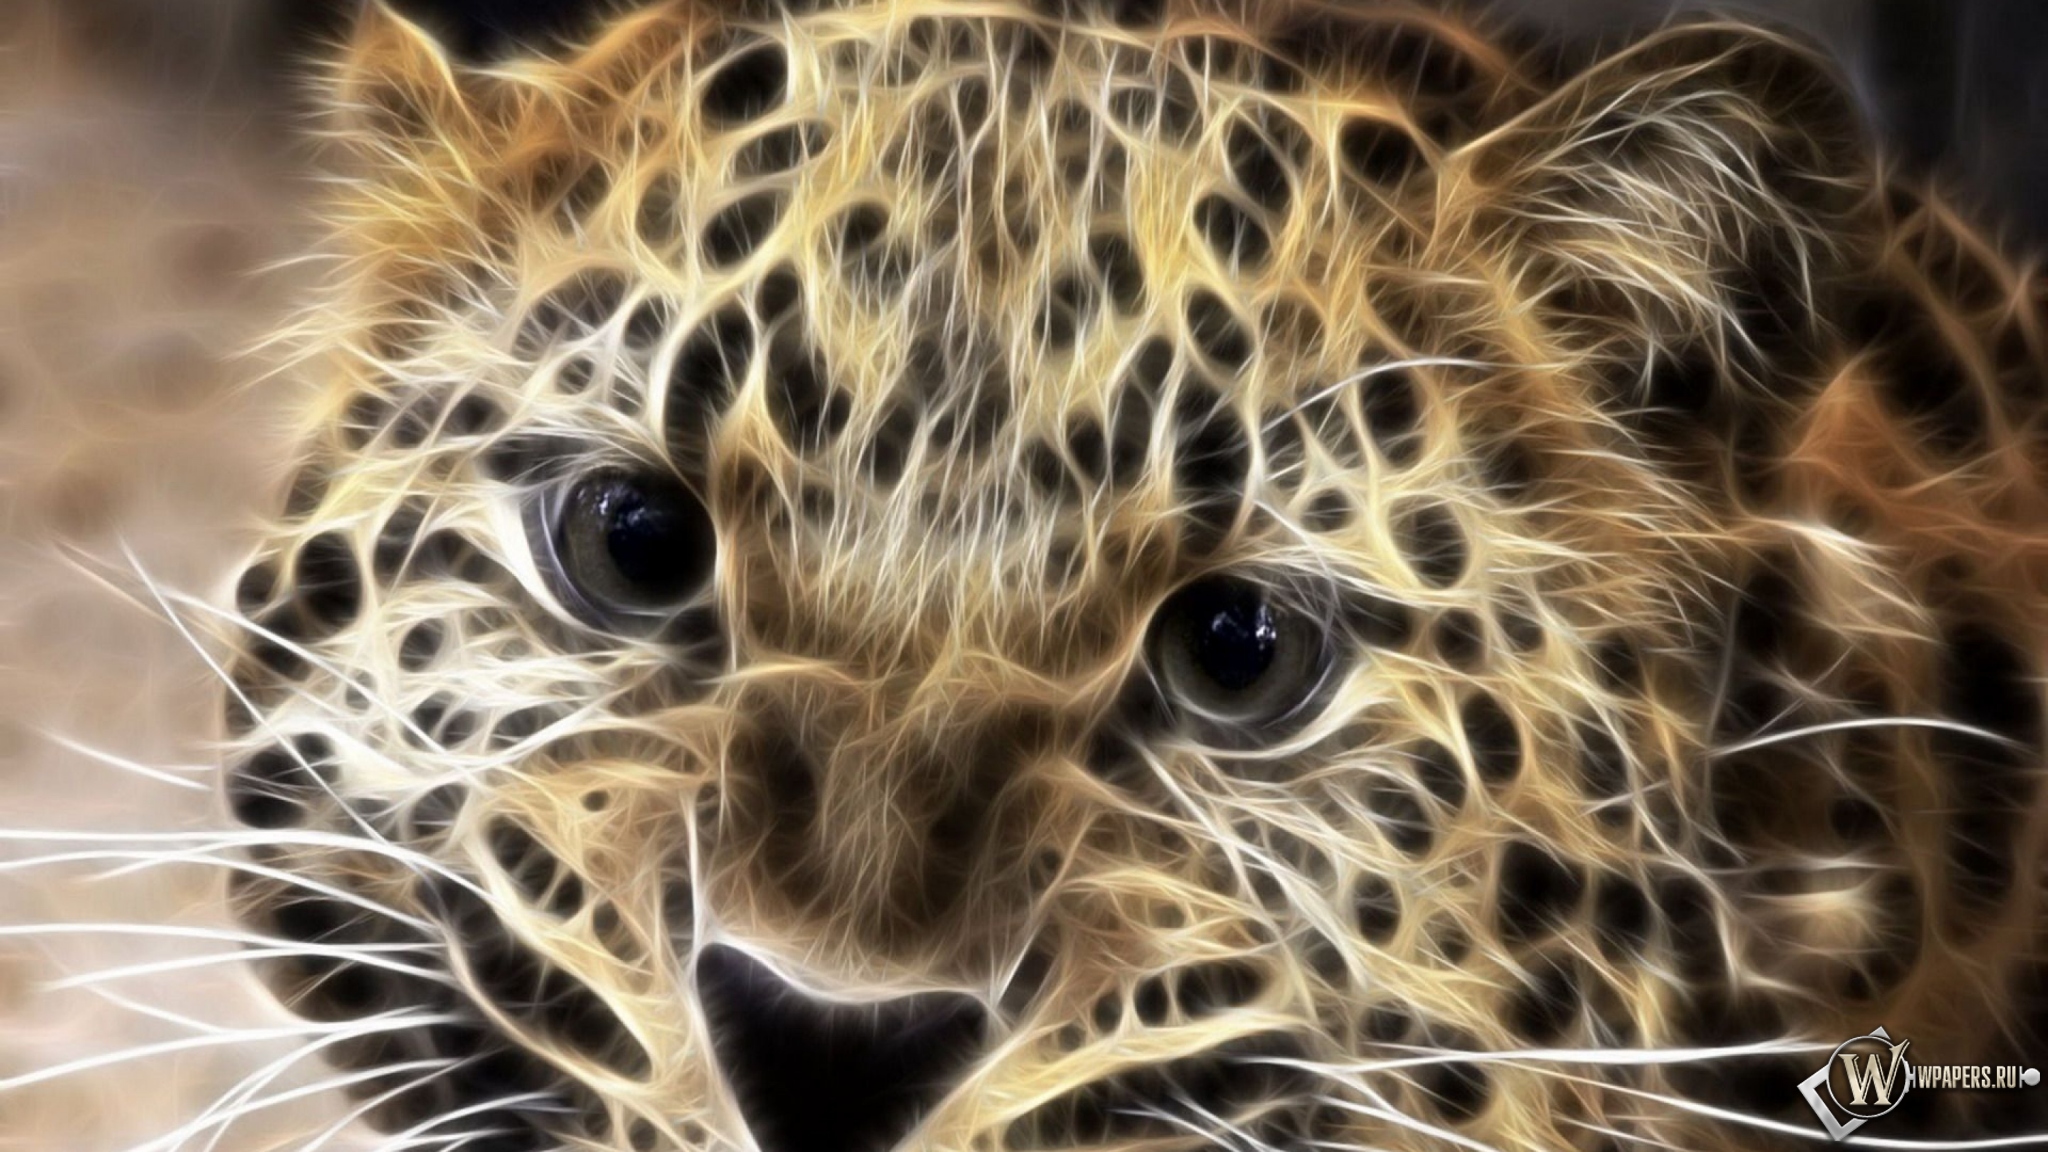 Леопард в обработке 2048x1152